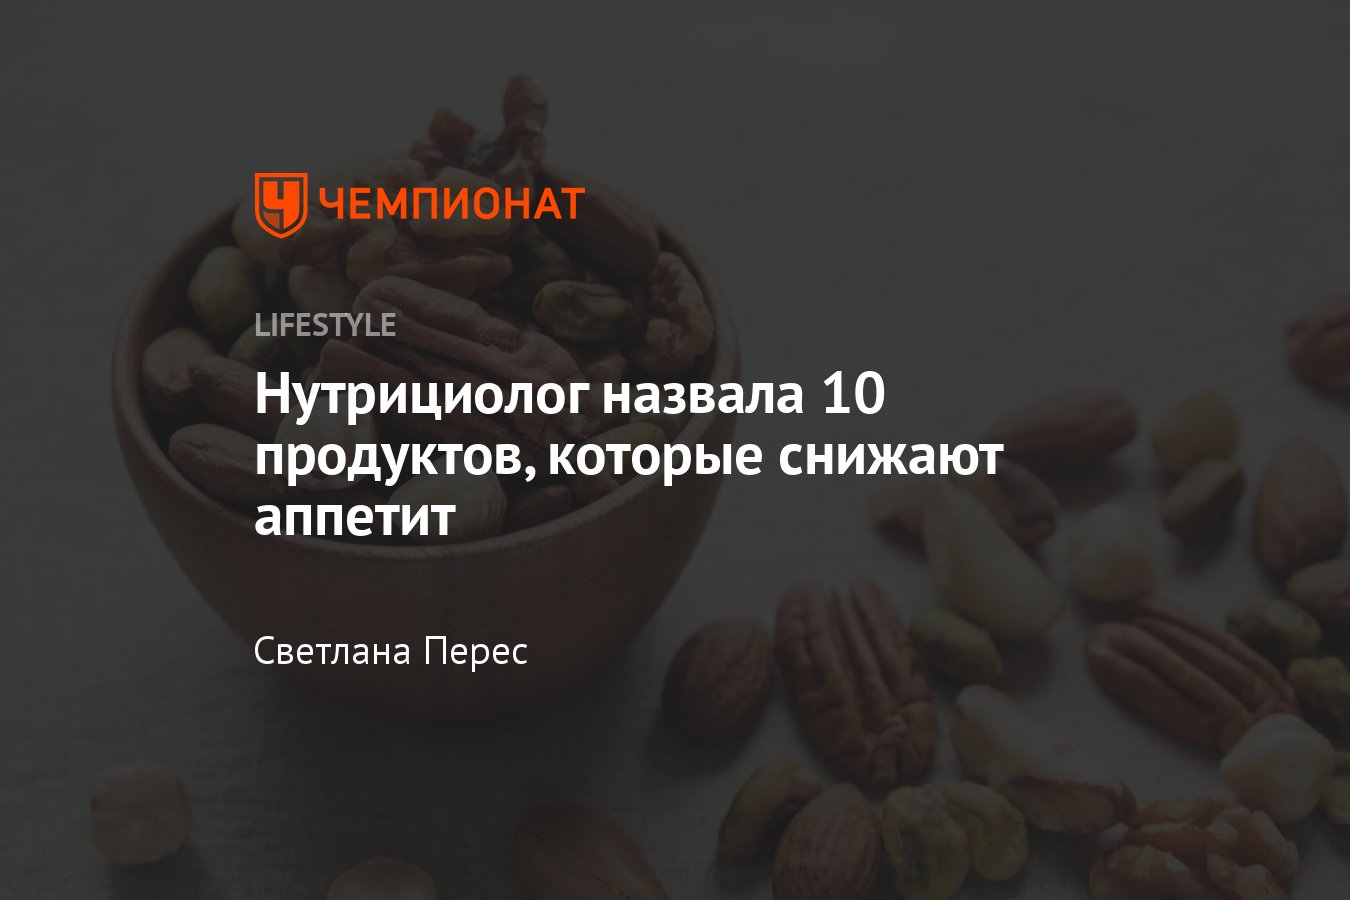 Сообщество «диабетические,диетические,здоровые продукты» ВКонтакте — публичная страница, Саратов